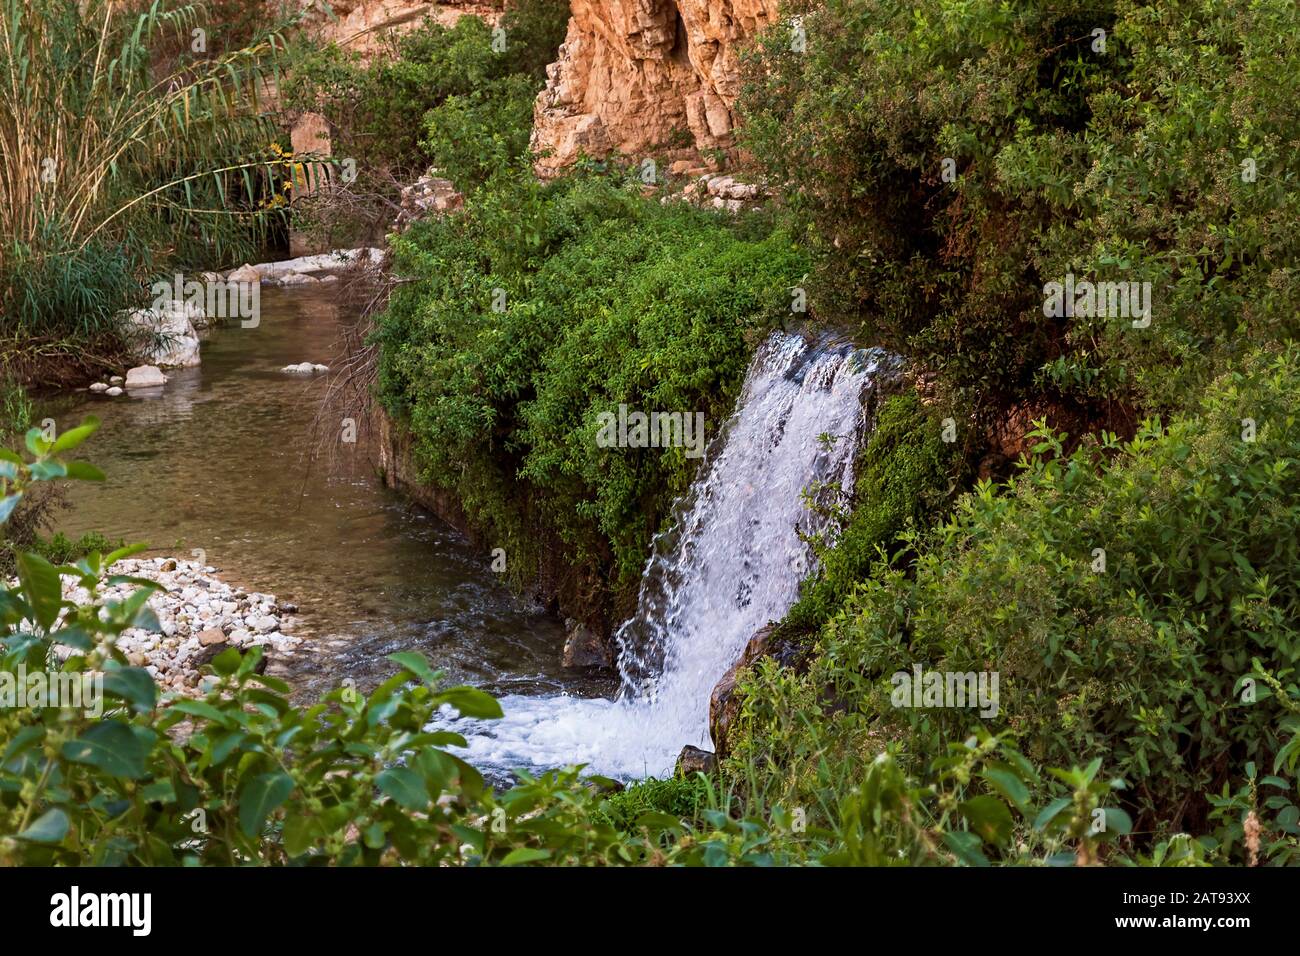 Una cascada alimentada por un manantial sale de la piedra caliza, acantilados de Wadi qelt nahal prat en el desierto de Judea rodeado de exuberante vegetación ribereña Foto de stock